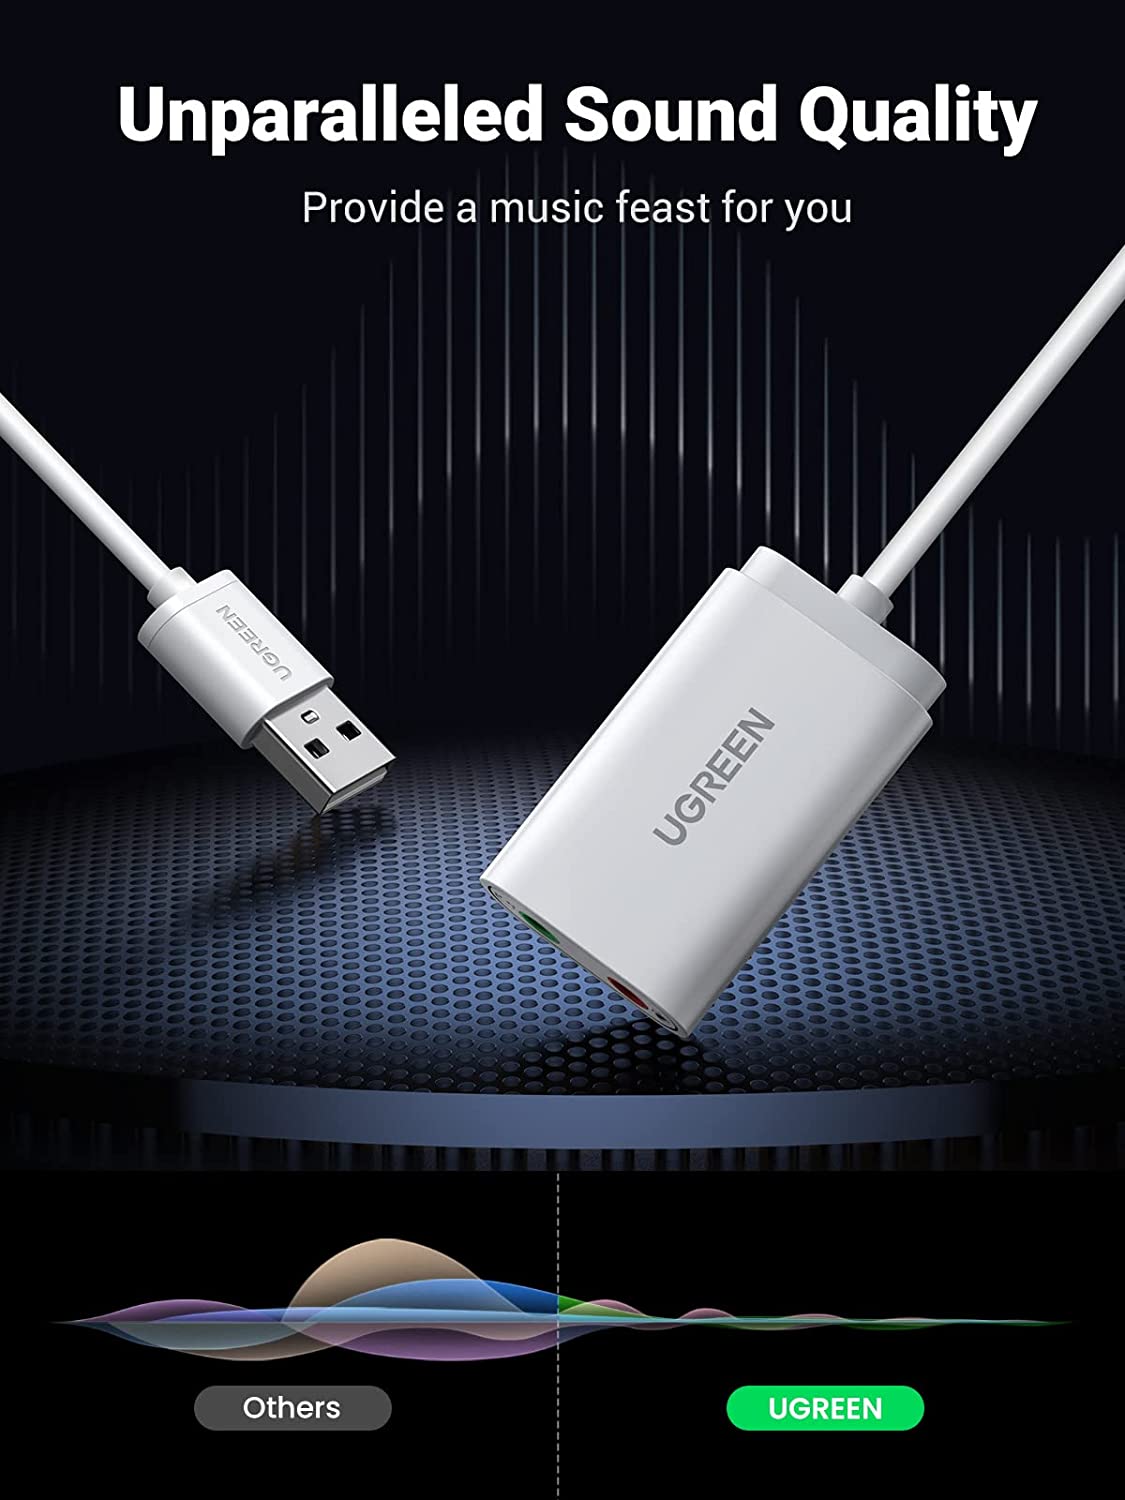 30143 Звуковая карта внешня UGREEN US205, USB to 2 AUX 3.5mm (микрофонный вход + аудиовыход), с проводом 15cm, цвет: белый от prem.by 